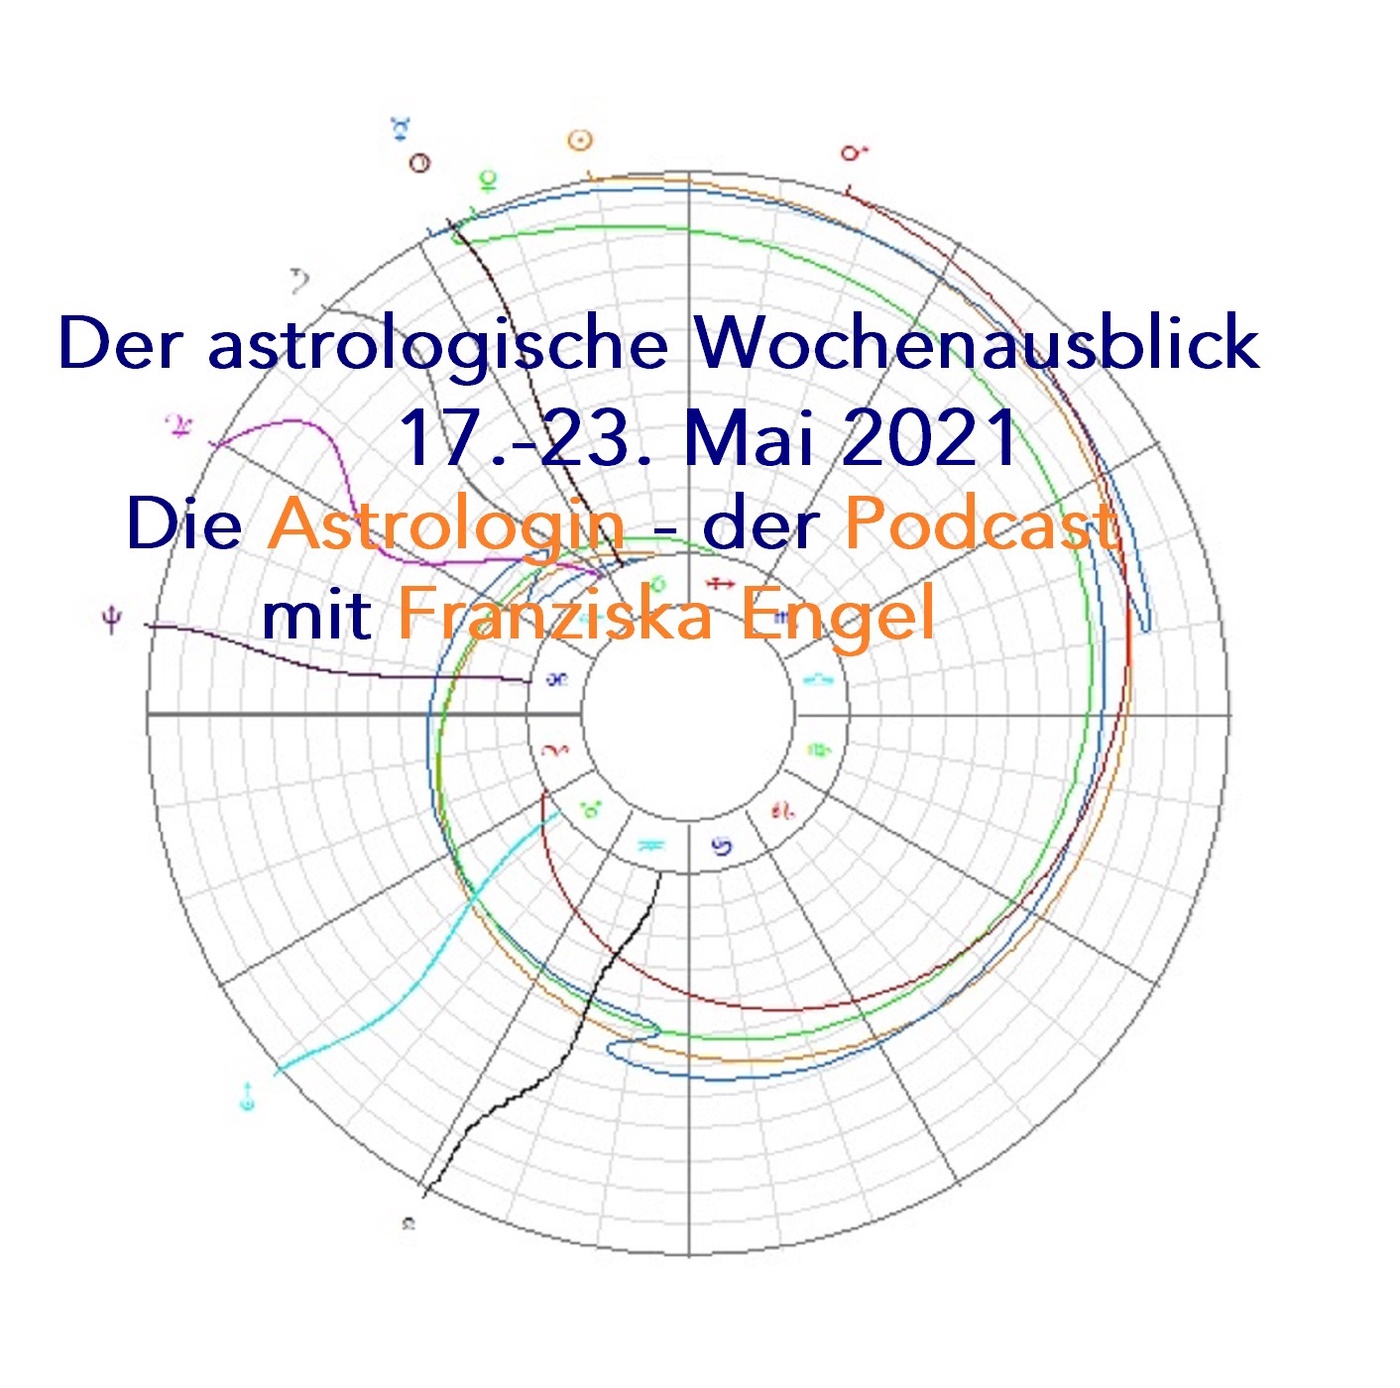 Astrologischer Wochenausblick 17. - 23. Mai 2021